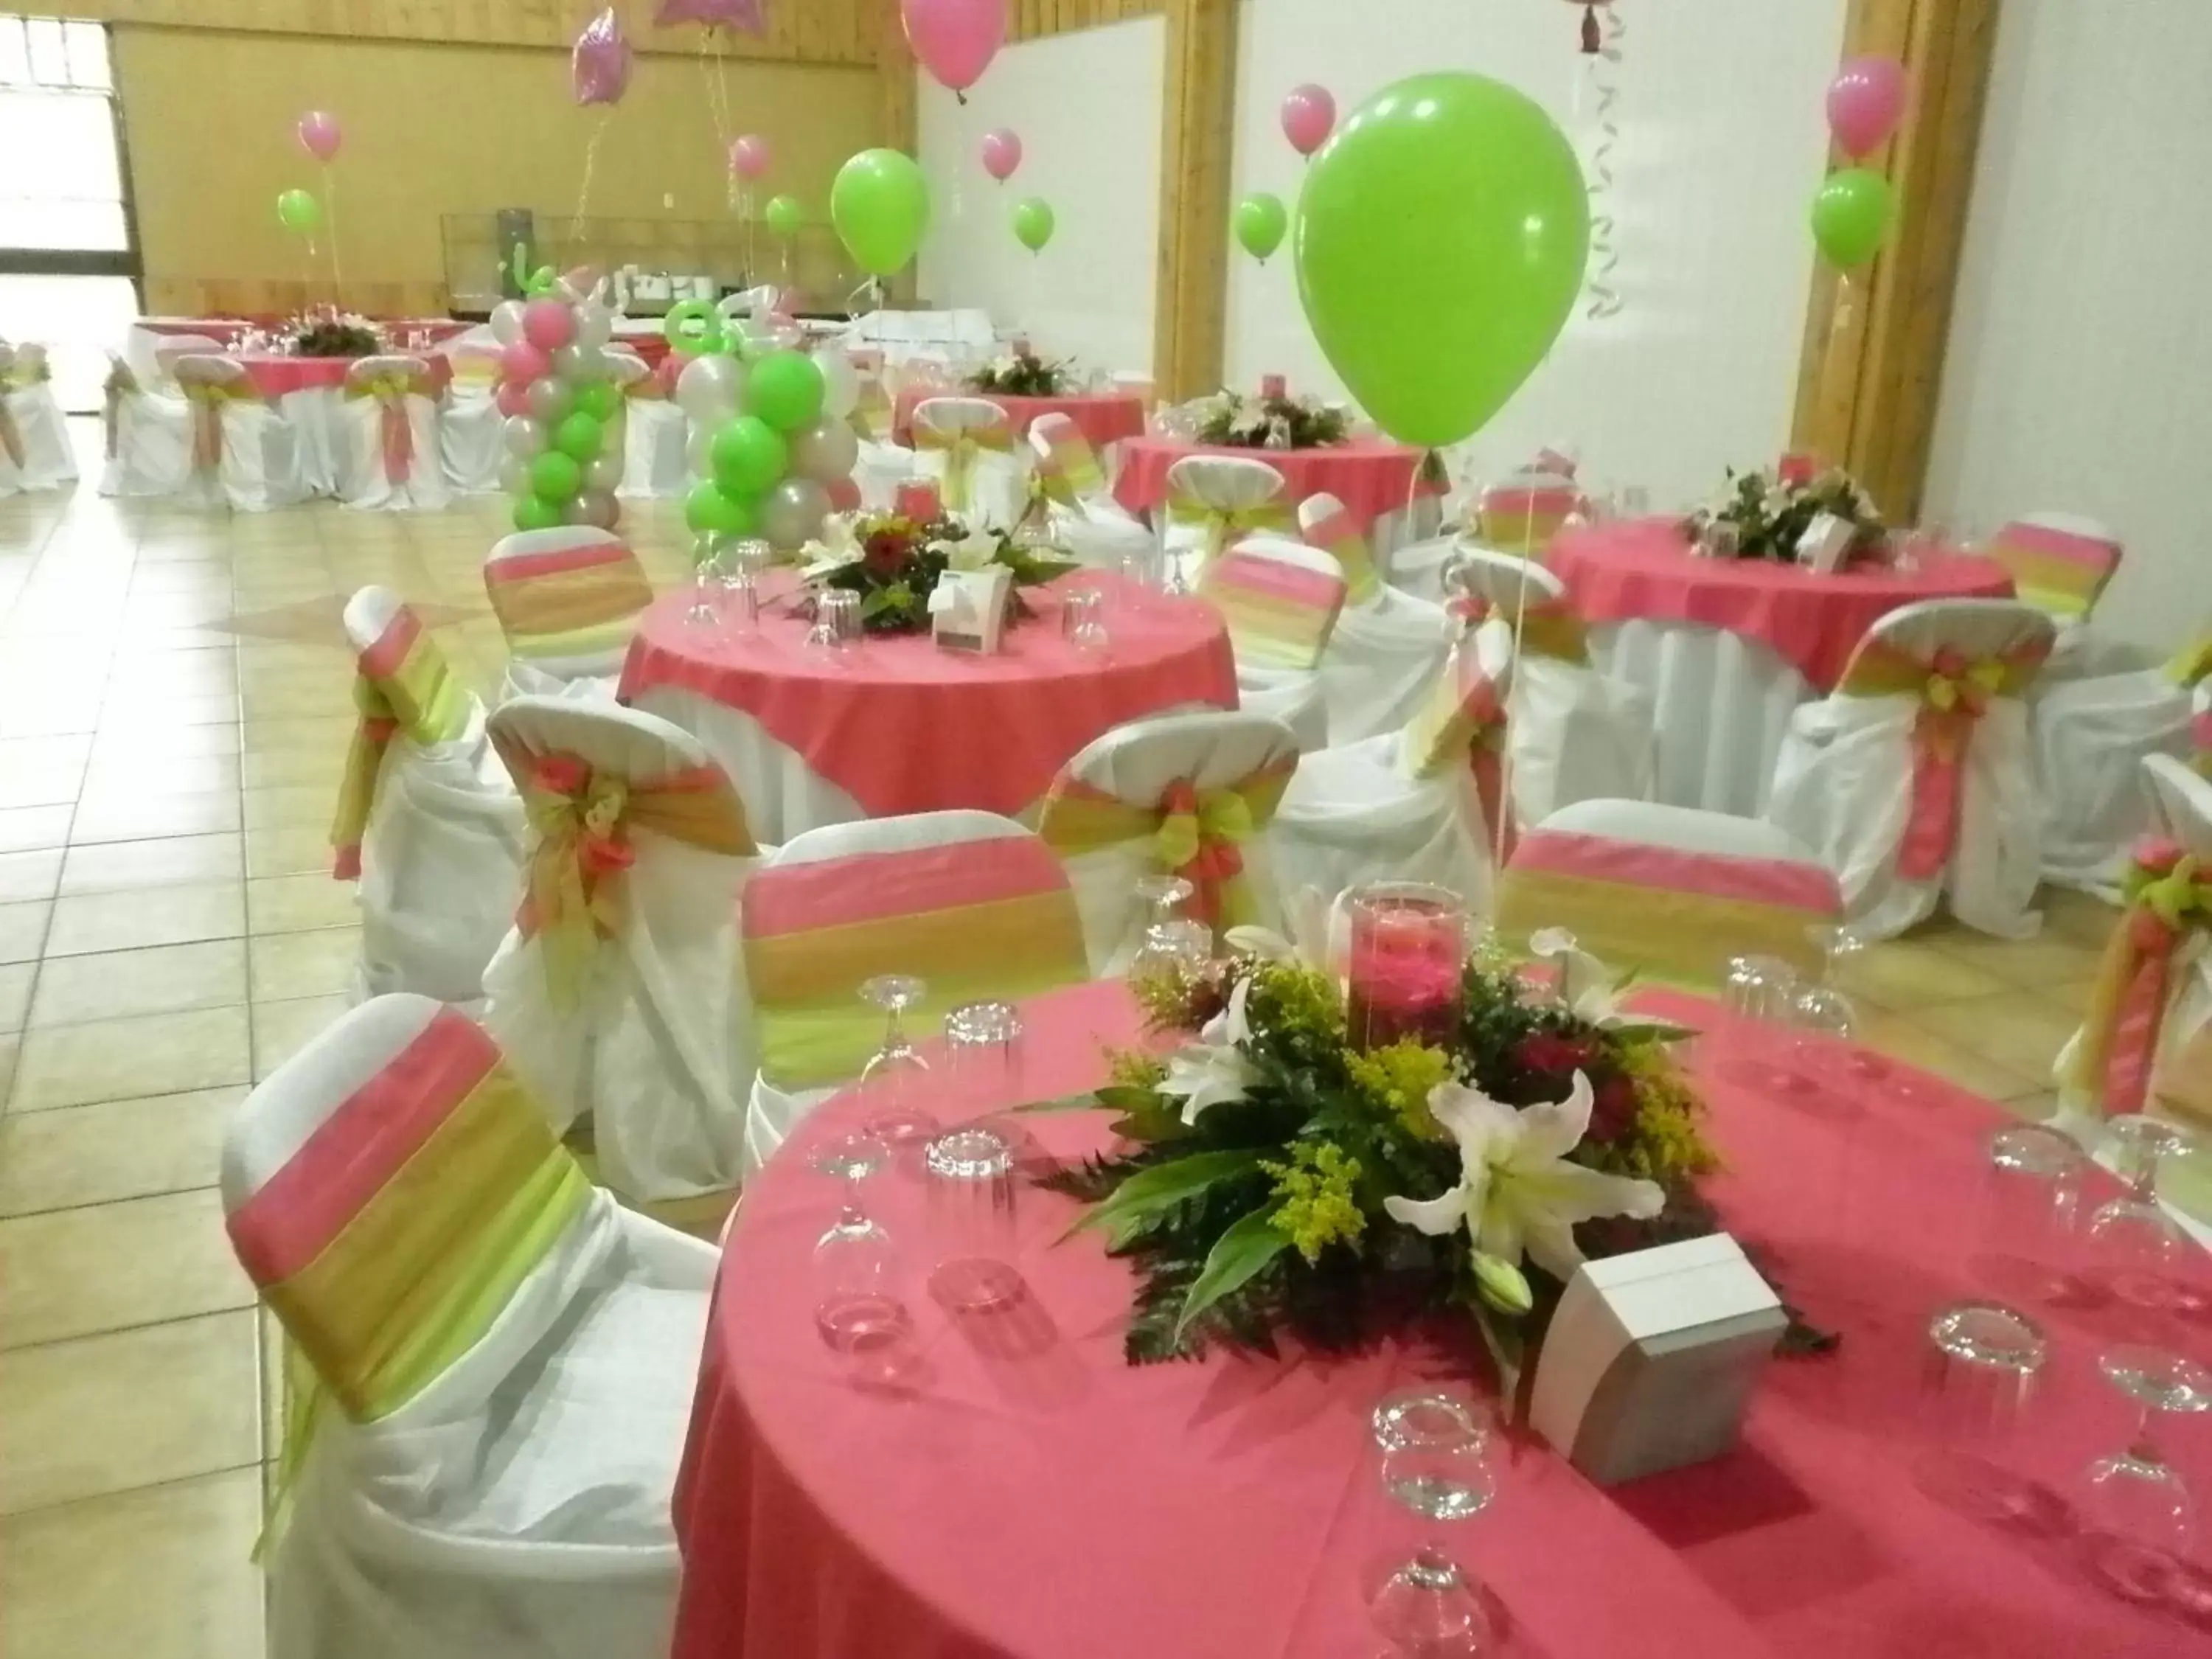 Banquet/Function facilities, Banquet Facilities in Hotel Cibeles Resort